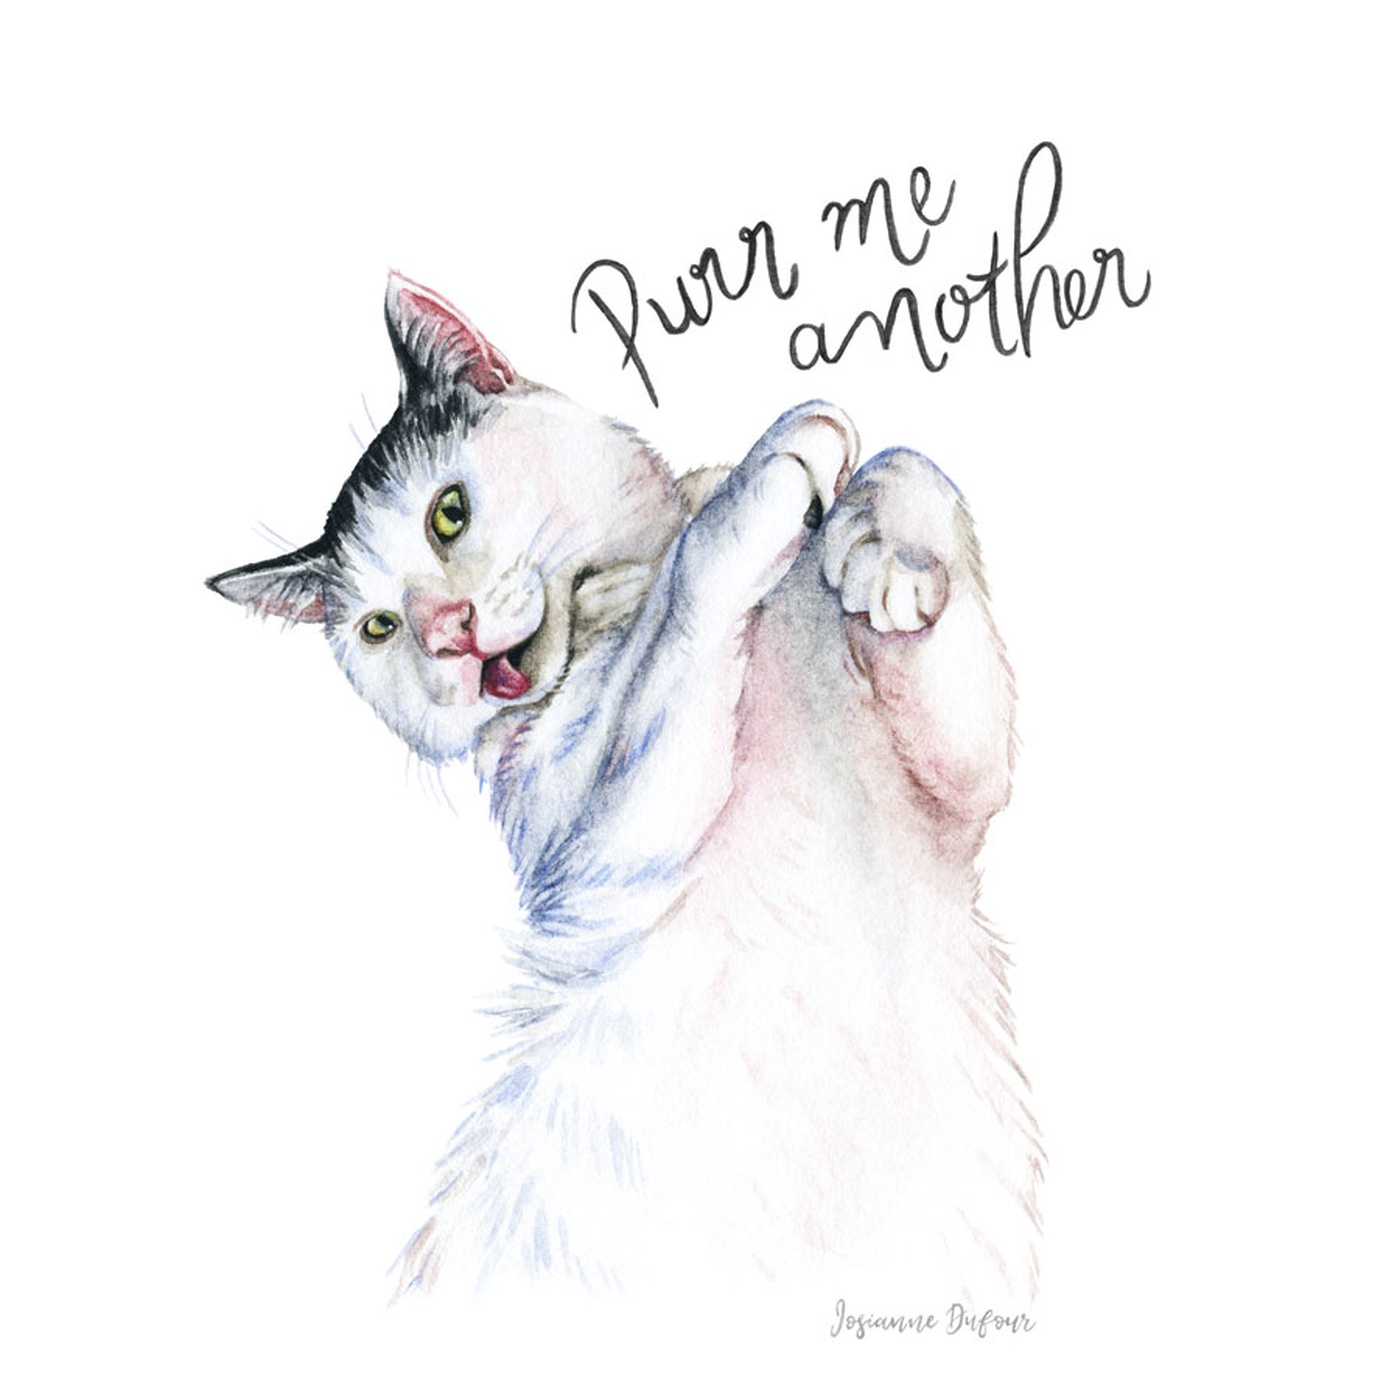 Josianne Dufour - Cat portrait